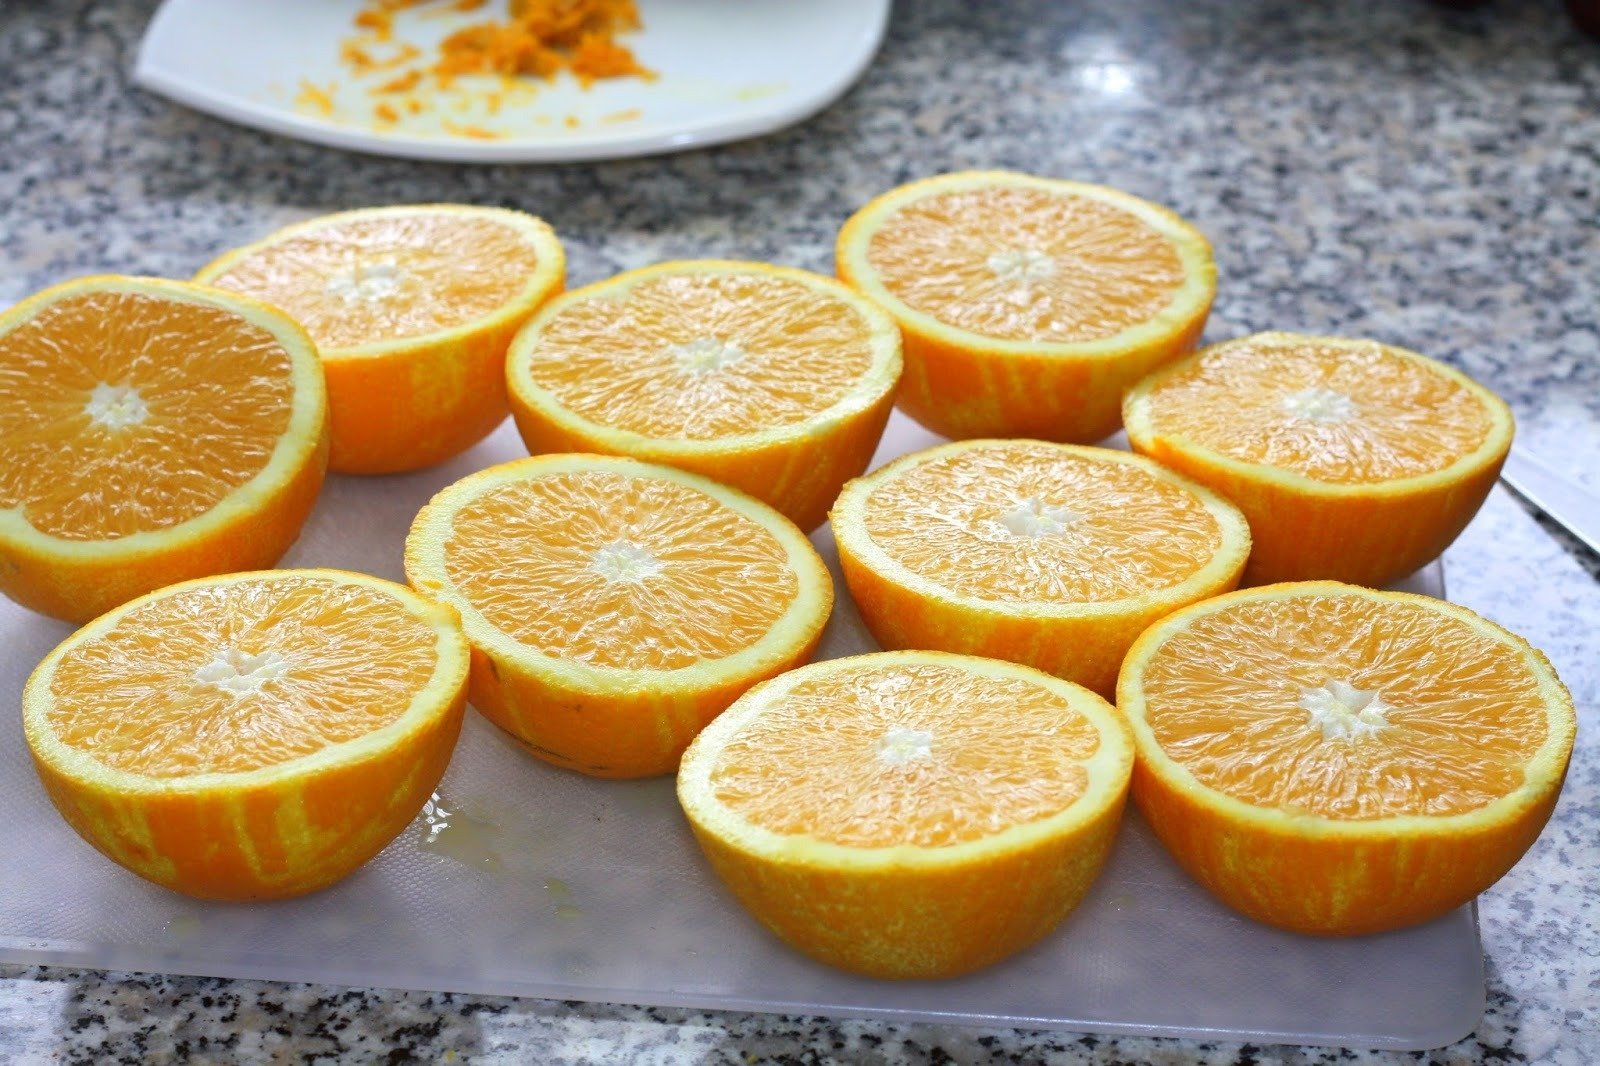 Десерт из апельсинов